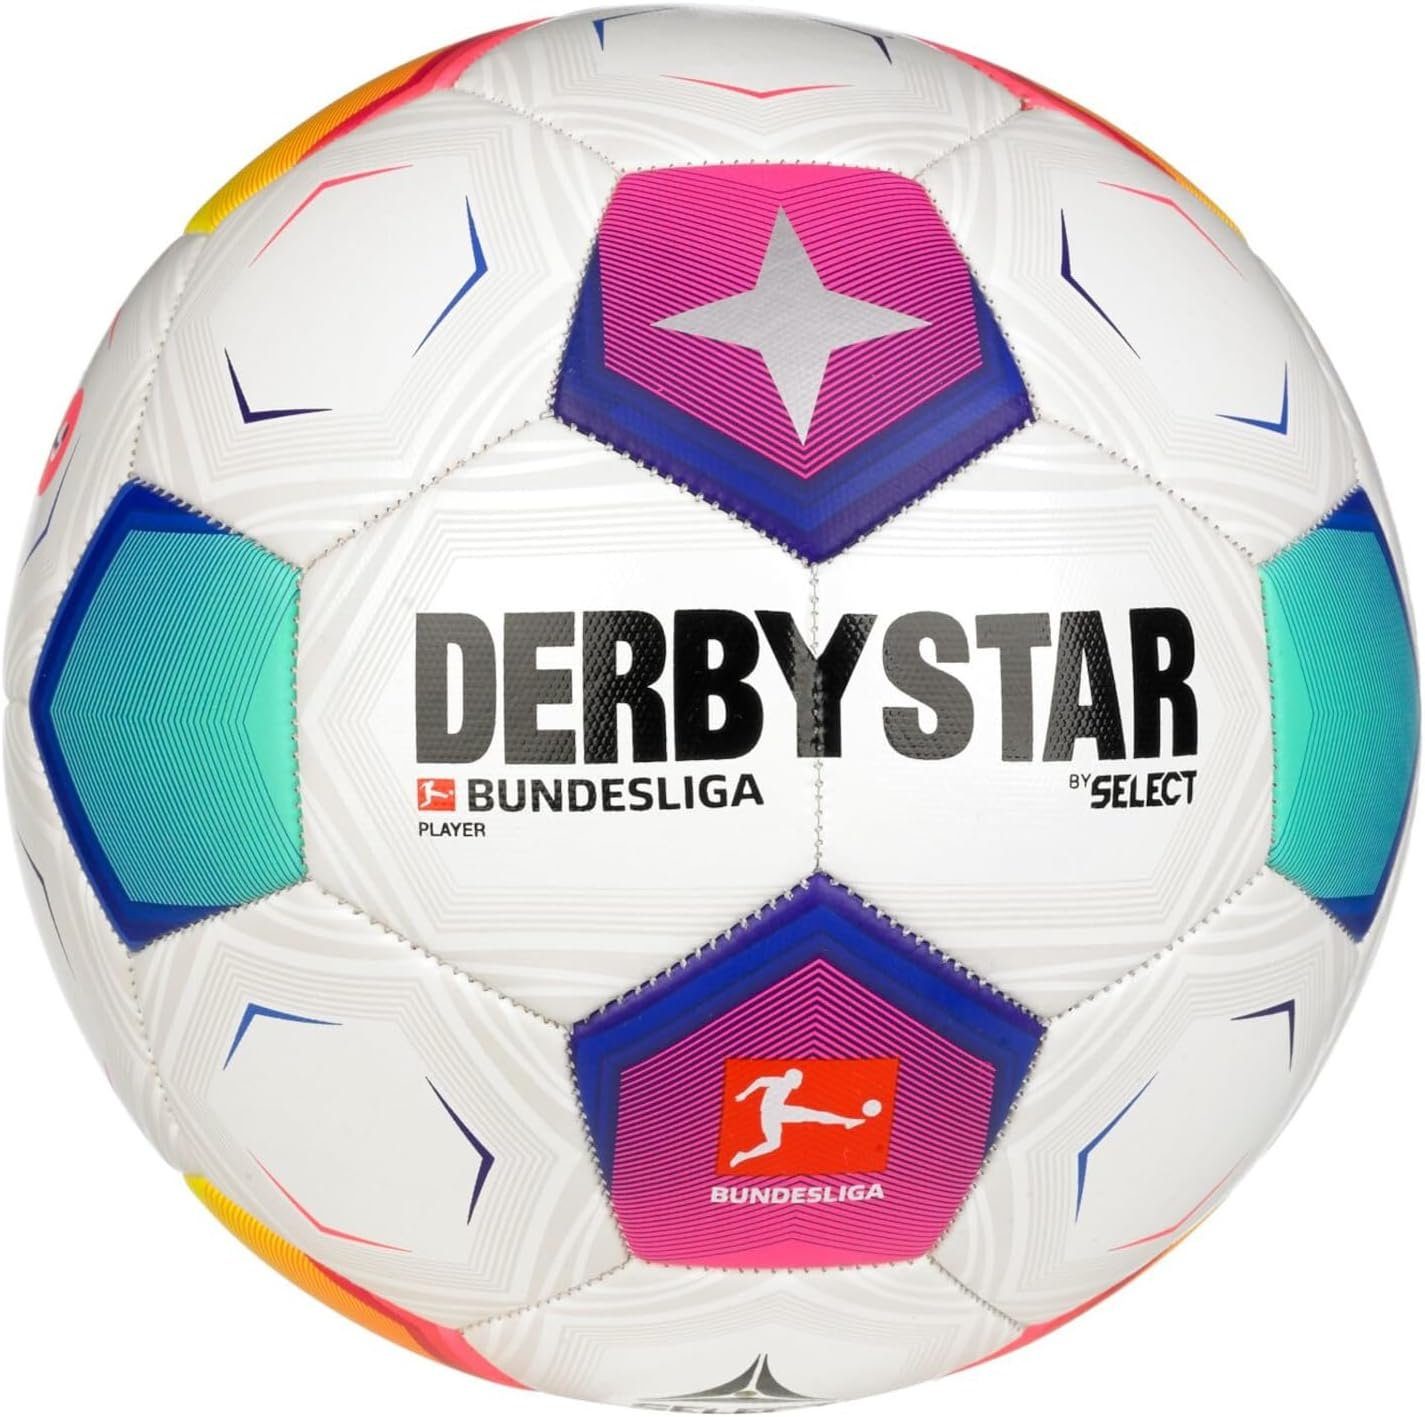 FB-BL Fußball Player Derbystar v23 Derbystar